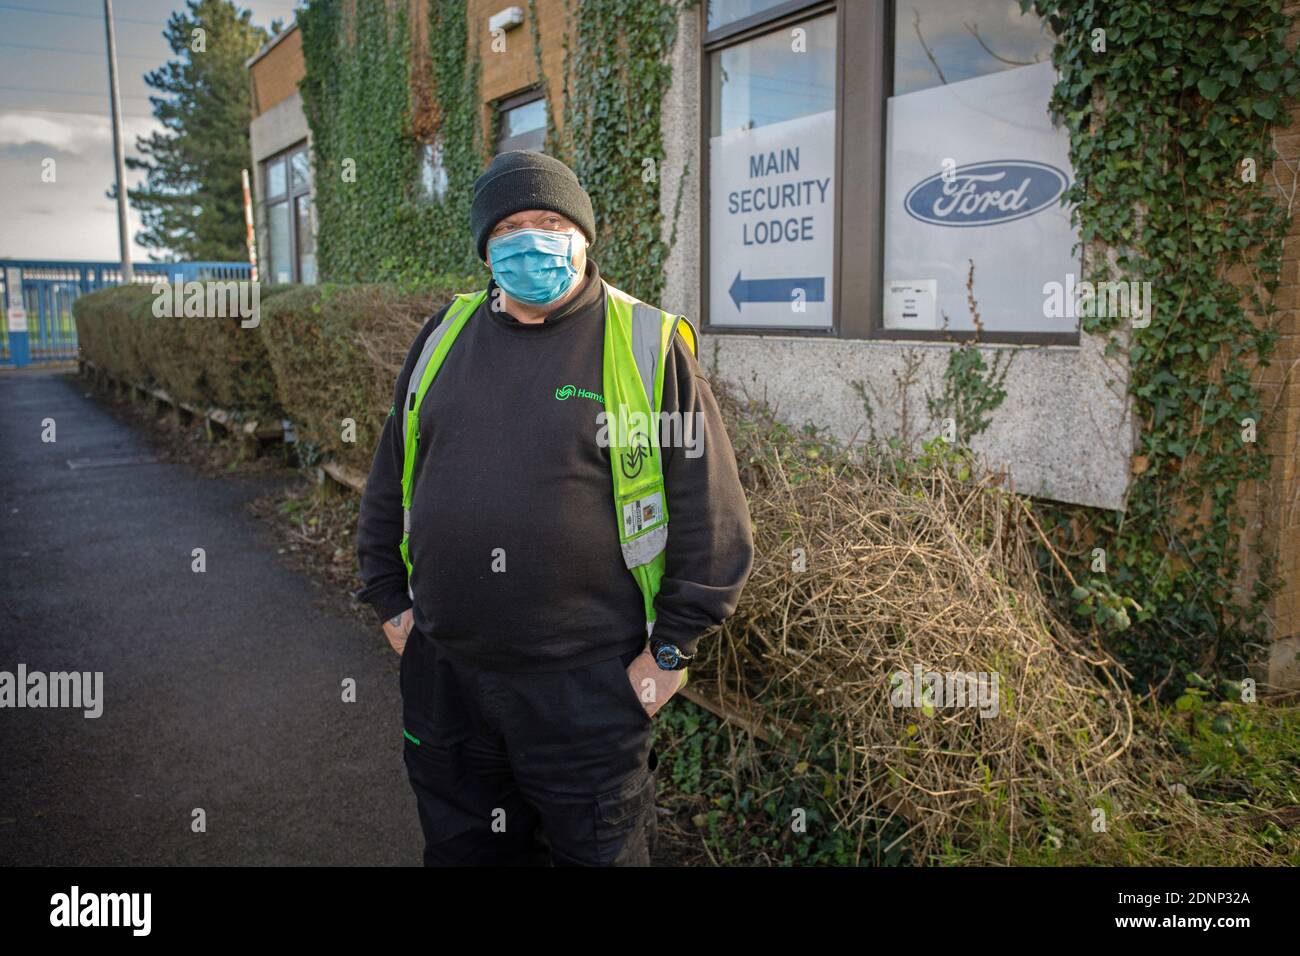 GRANDE-BRETAGNE / pays de Galles / Bridgend / Tony travailleur à l'extérieur de la grande usine de moteurs Ford à Bridgend, au sud du pays de Galles, au Royaume-Uni Banque D'Images